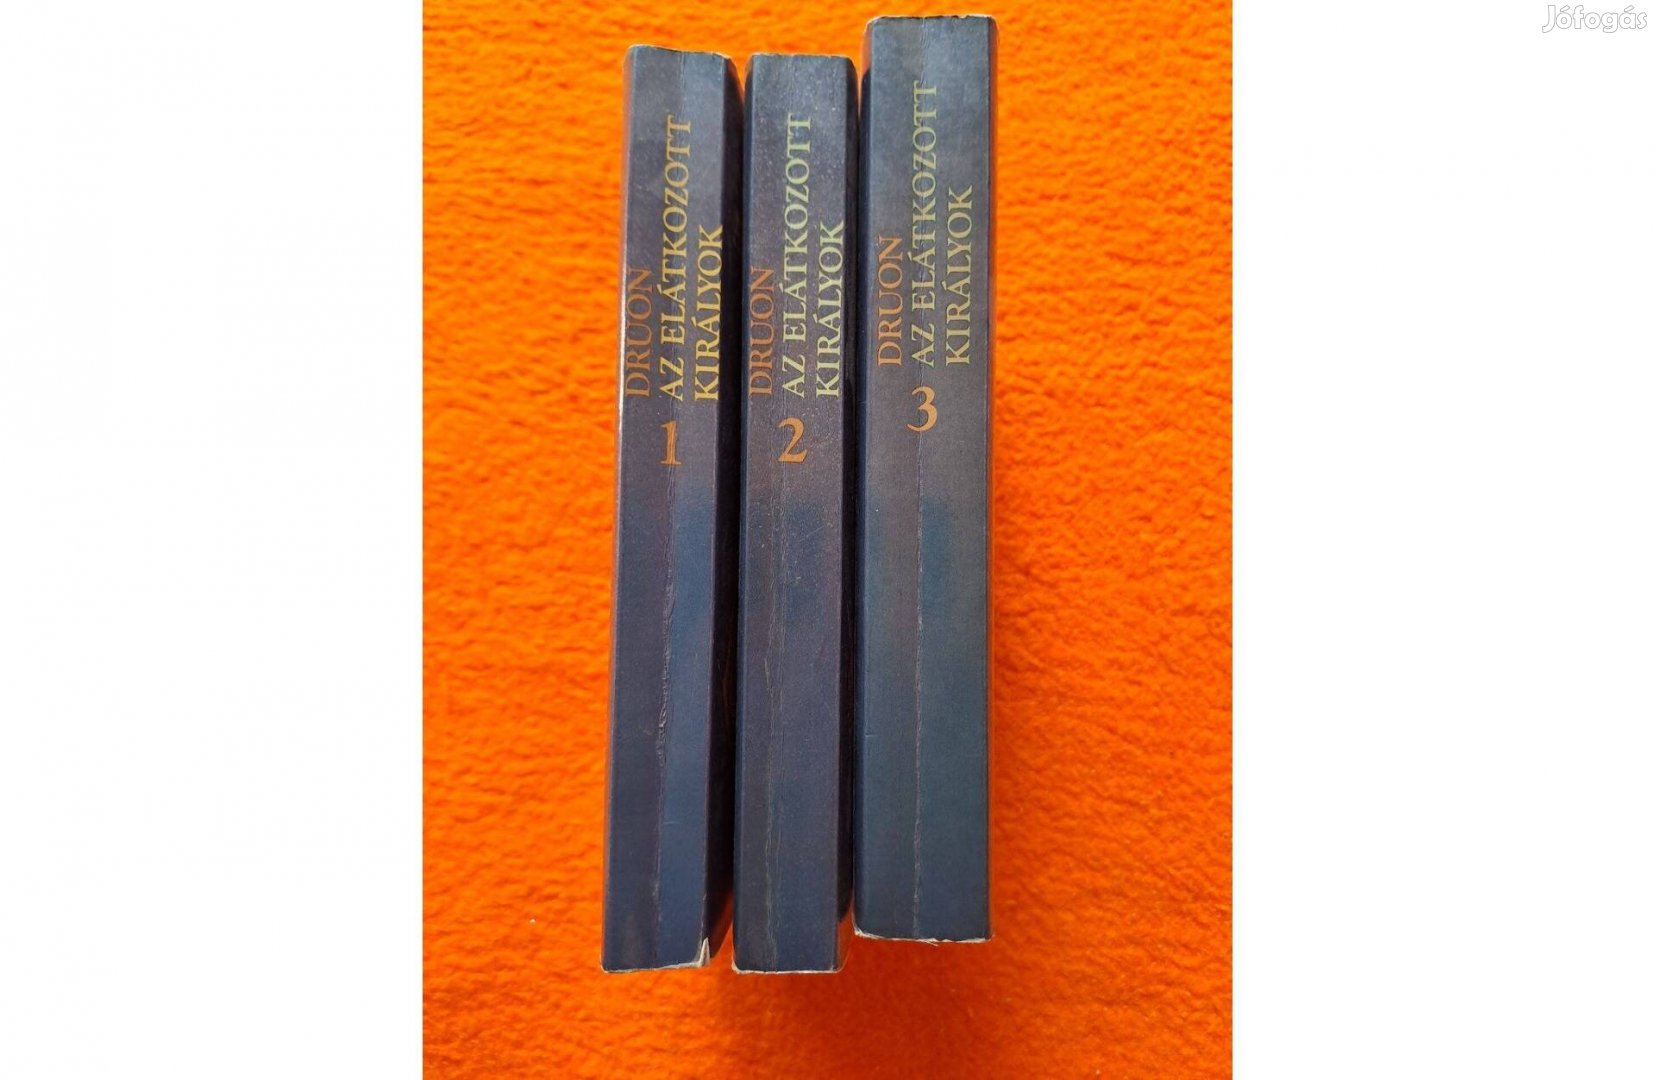 Maurice Druon: Az elátkozott királyok 1 2 3 kötetek